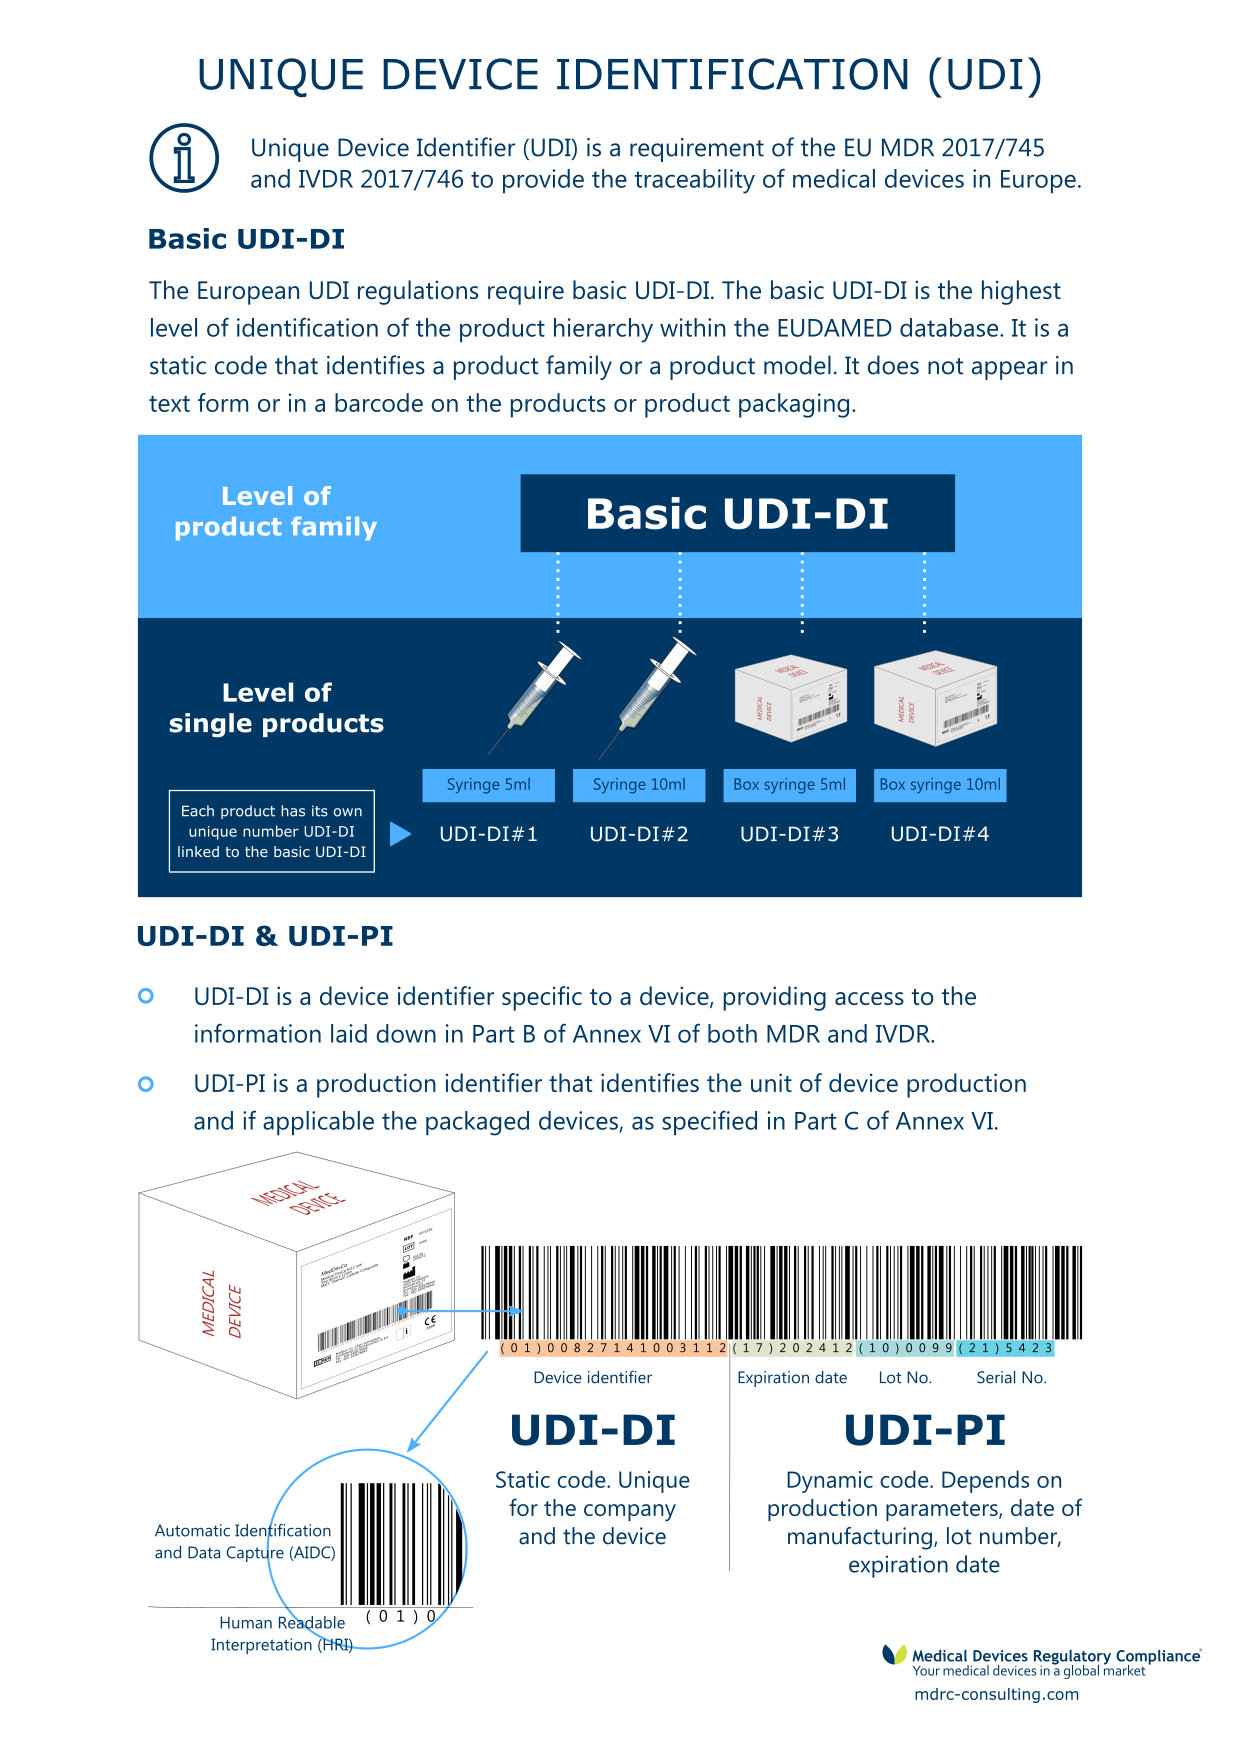 Unique device identification (UDI) in the European Union